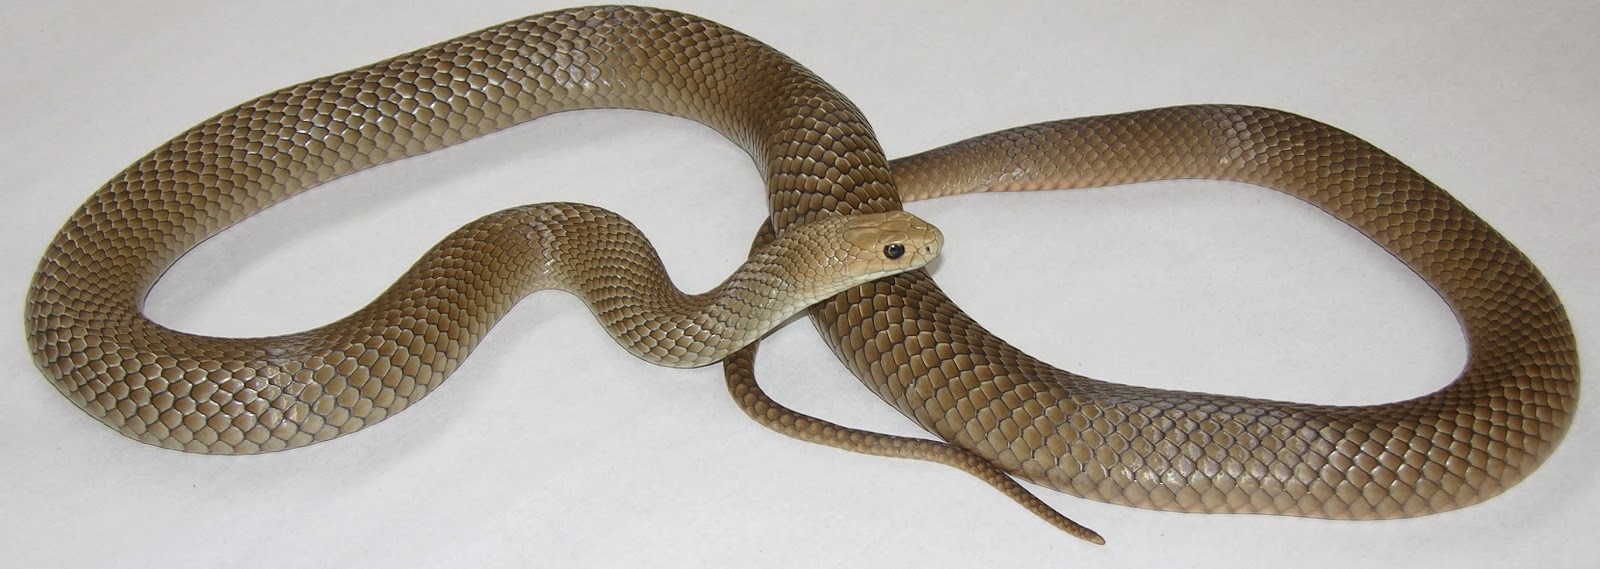 100 Snakes In Brisbane Backyards Eric Vanderduys 593 Best